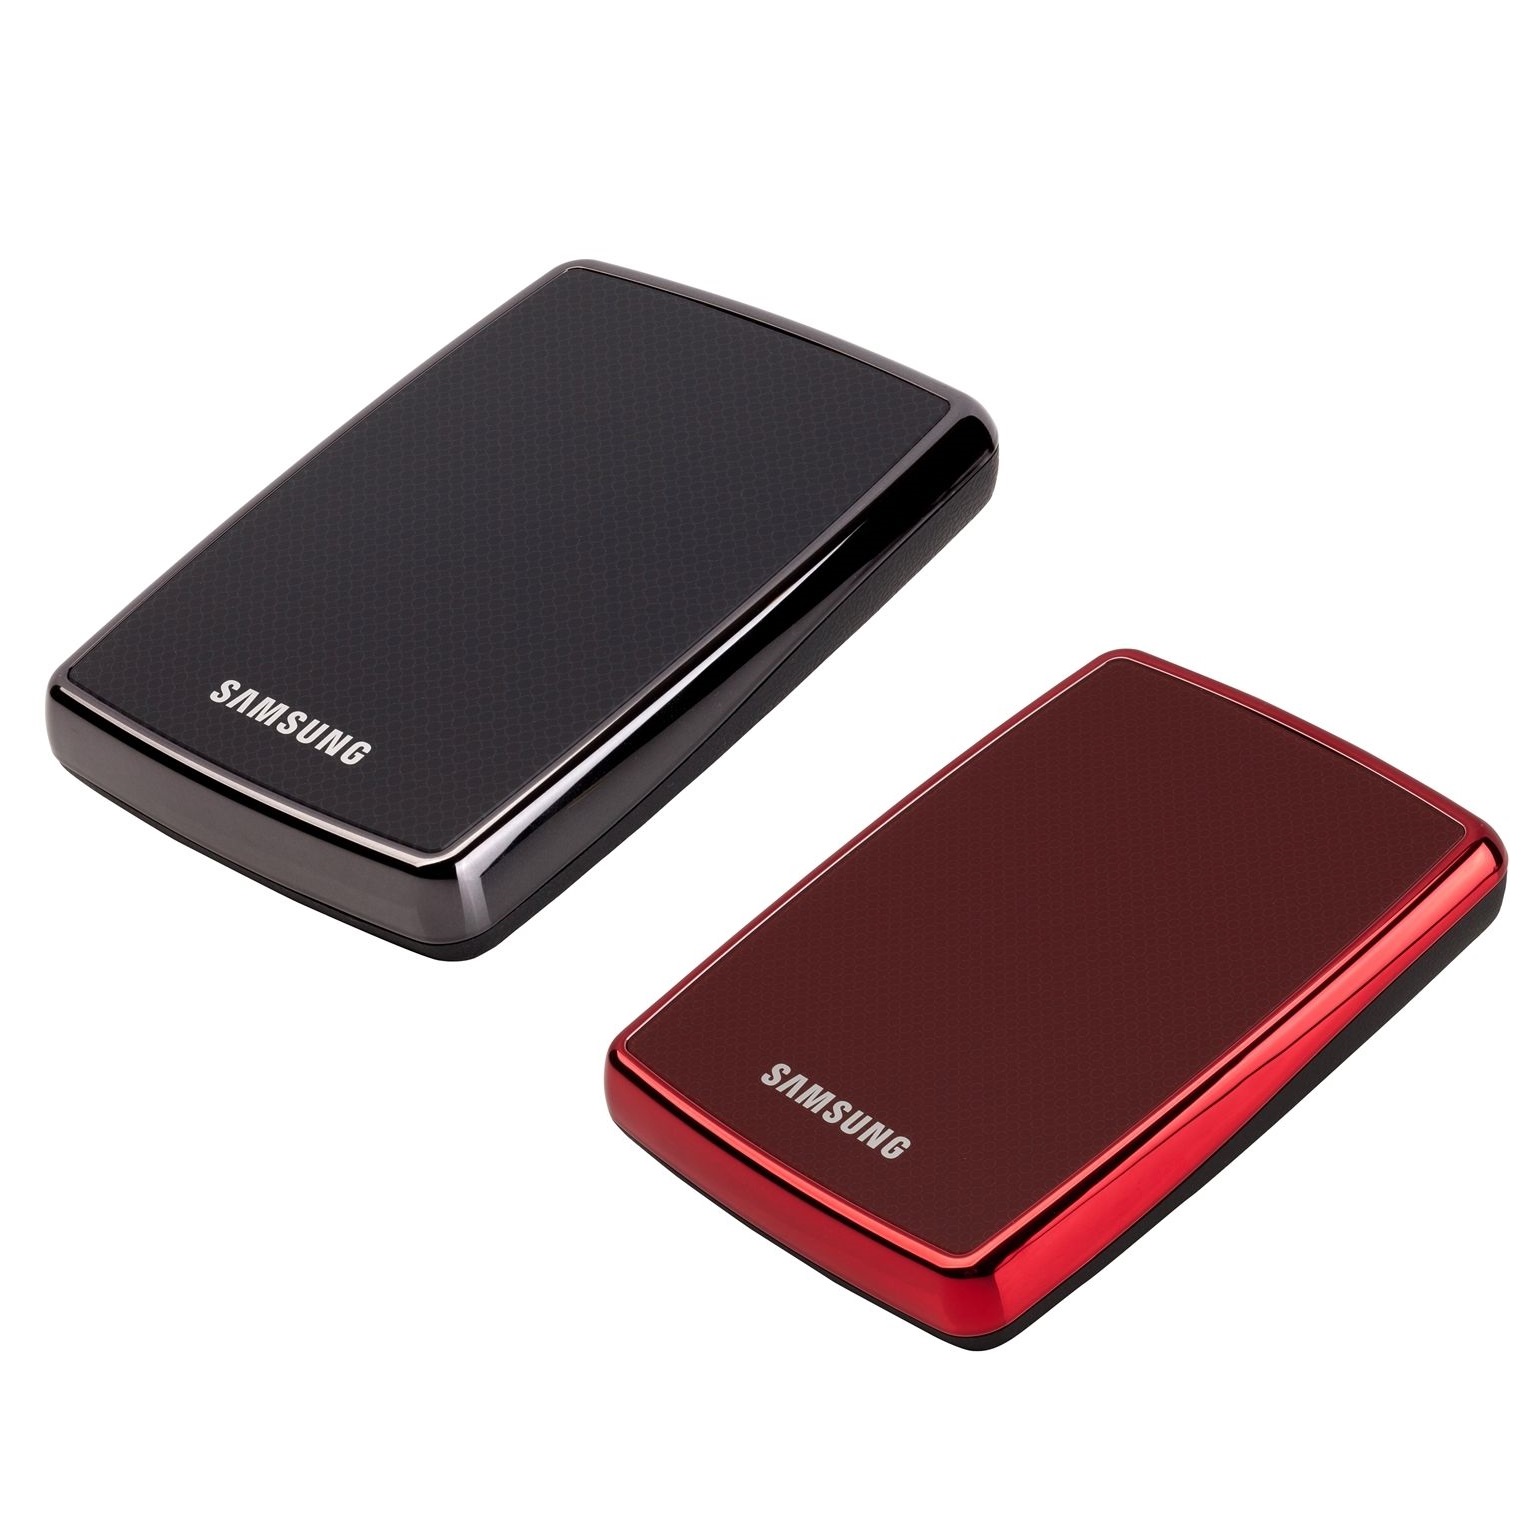 Ổ cứng di động Samsung Portable S3 500Gb USB3.0 Đen